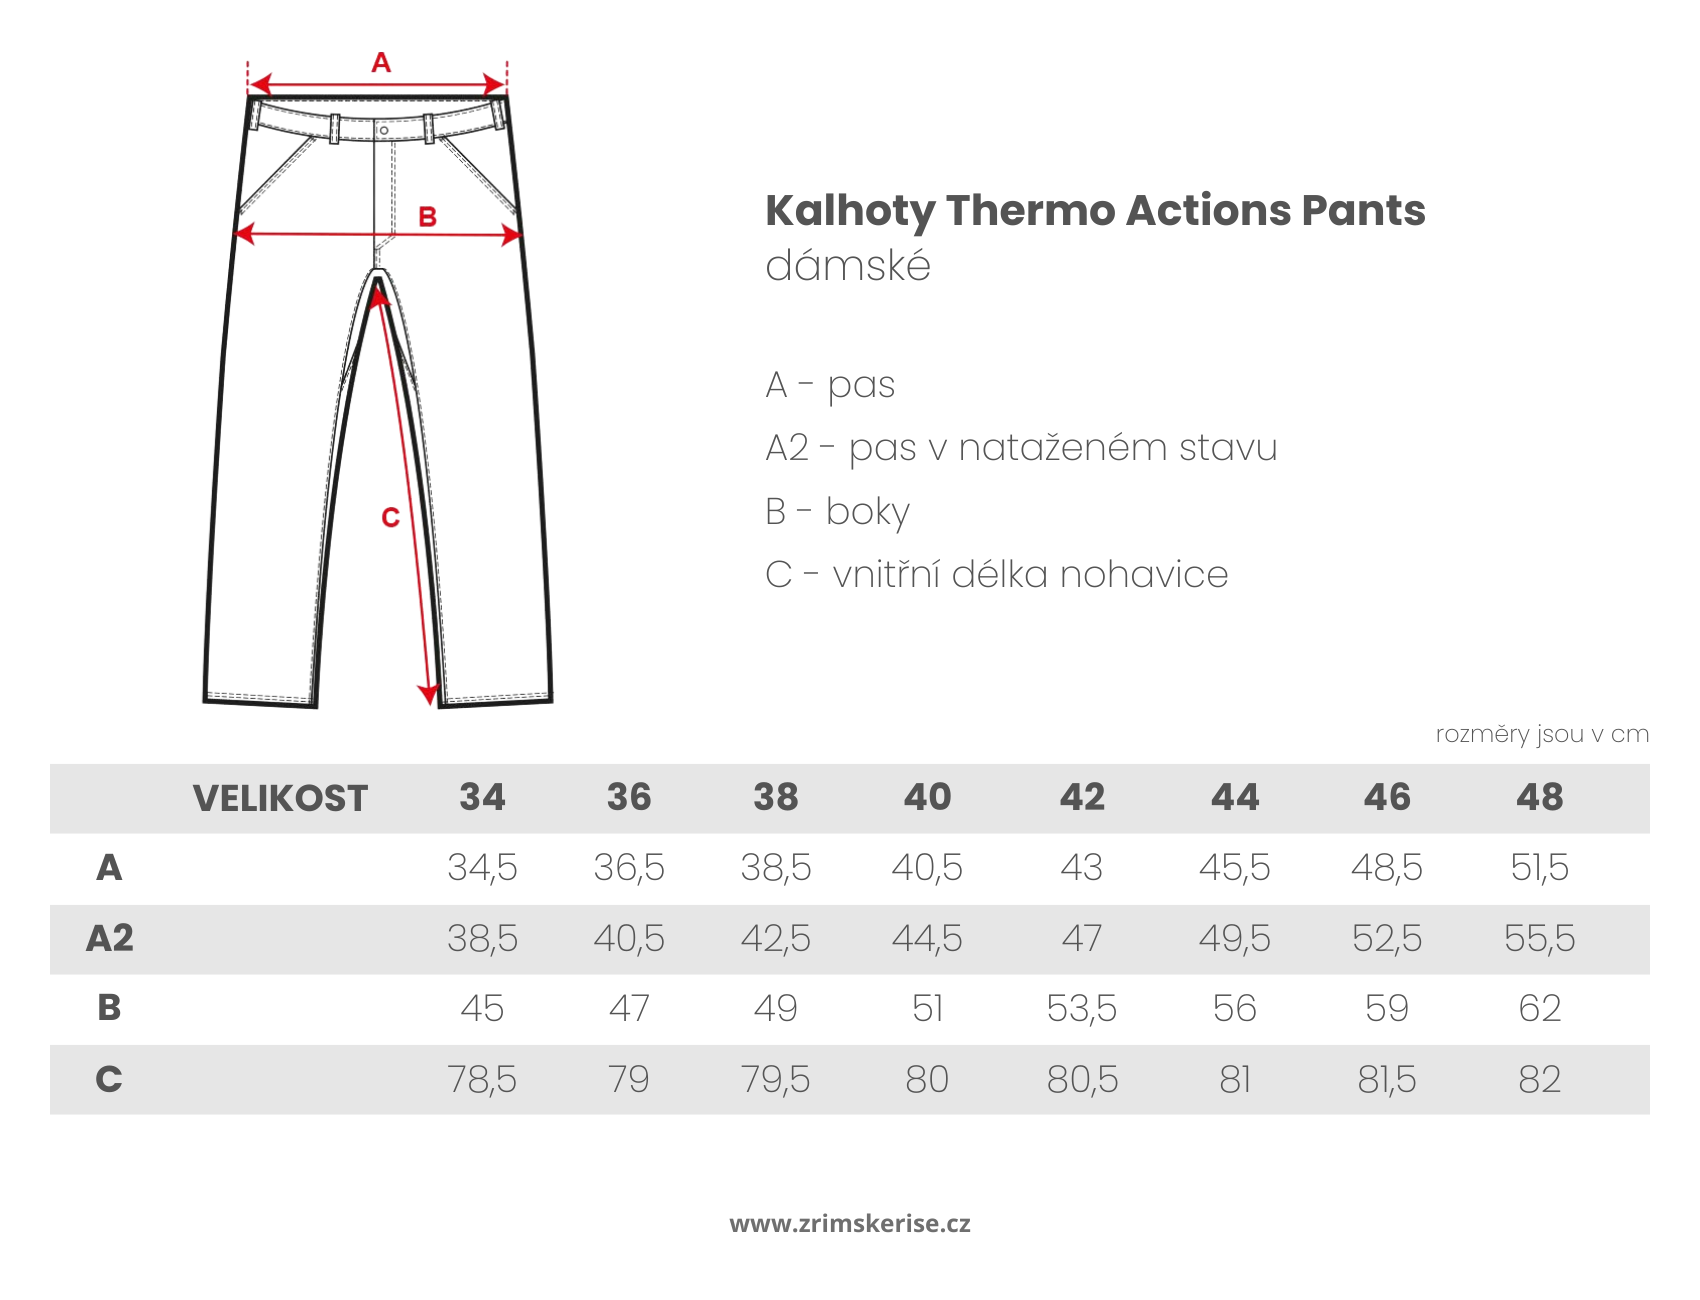 Kalhoty Thermo Actions Pants (dámské)